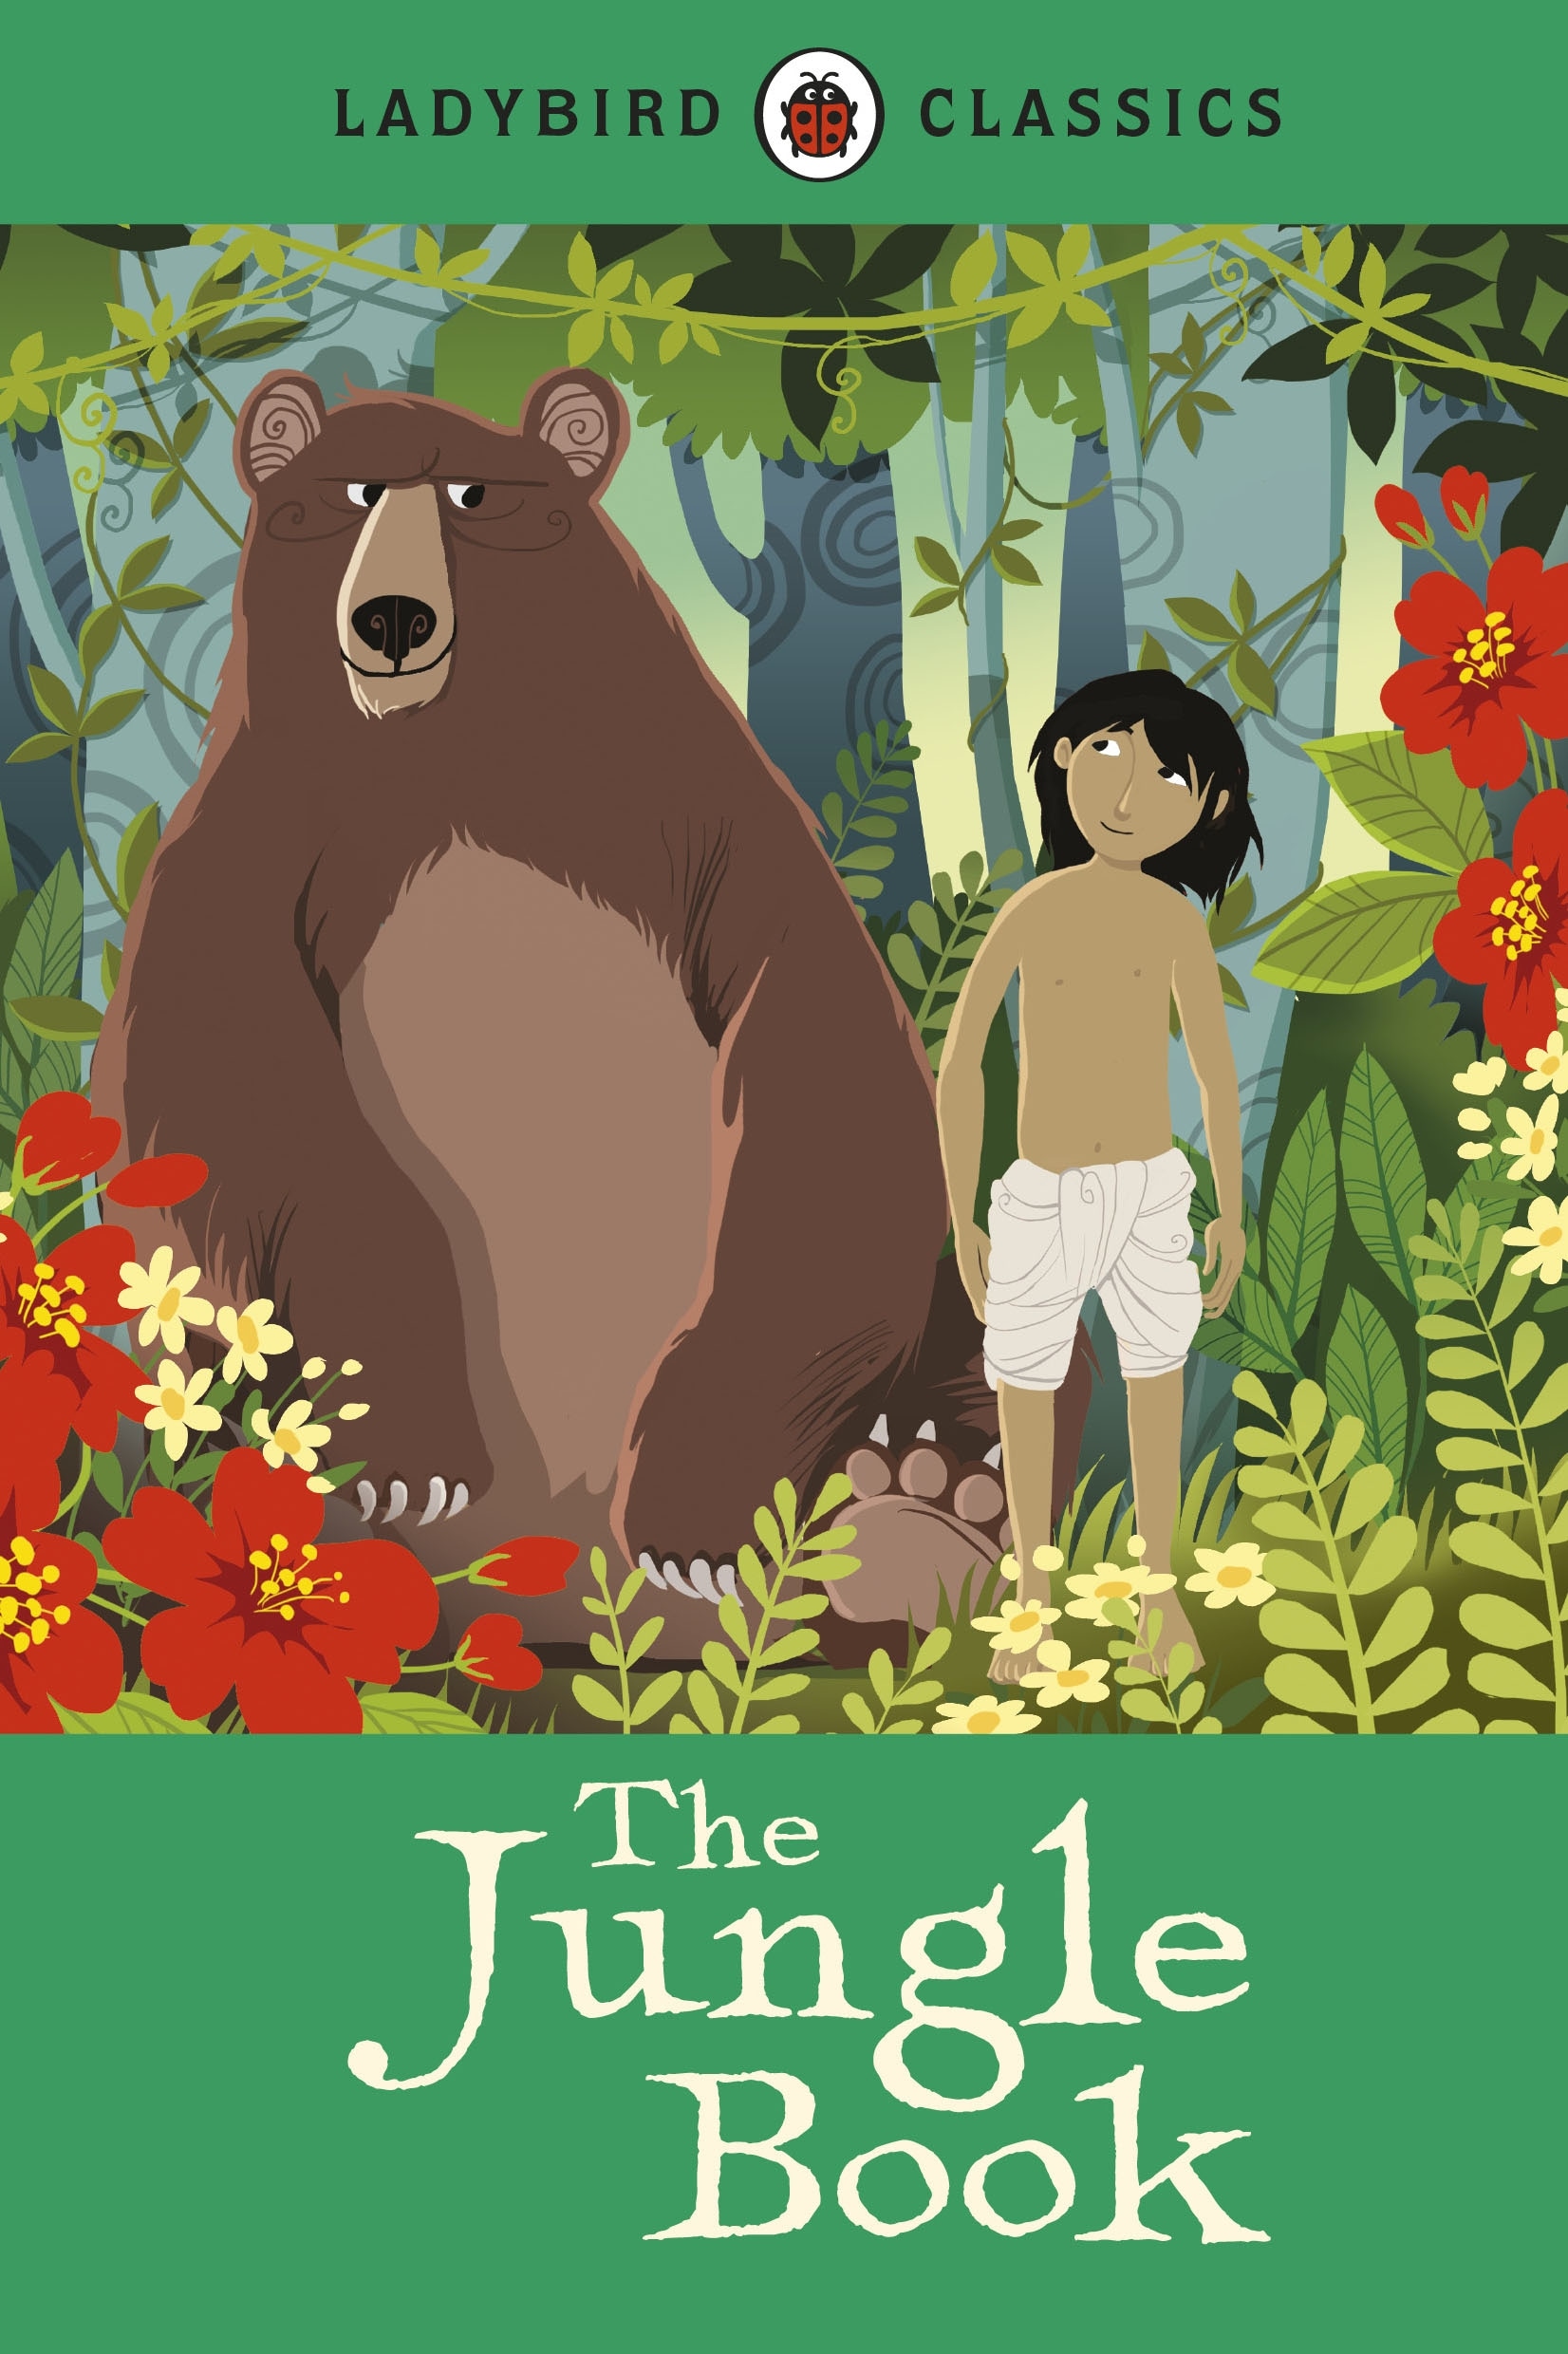 Book “Ladybird Classics: The Jungle Book” by Rudyard Kipling — April 4, 2013